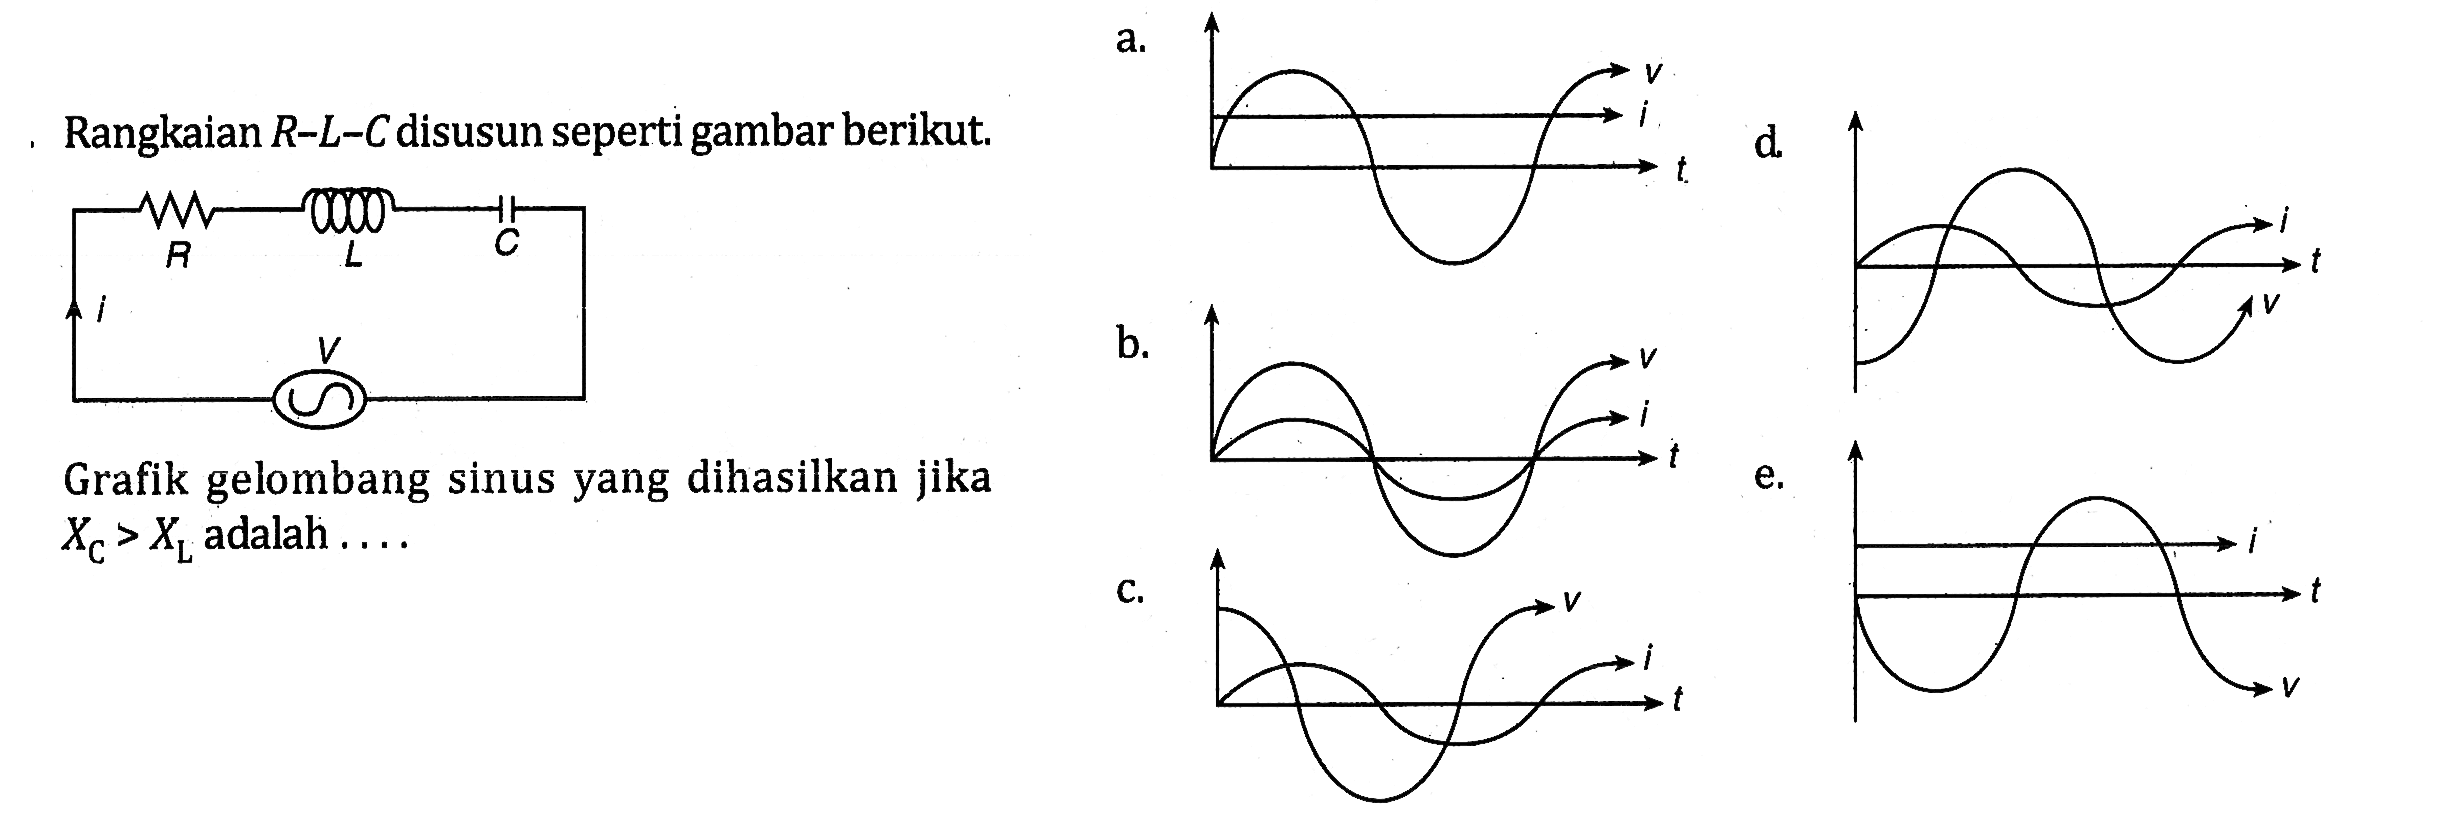 Rangkaian  R-L-C  disusun seperti gambar berikut.Grafik gelombang sinus yang dihasilkan jika XC>XL adalah ...